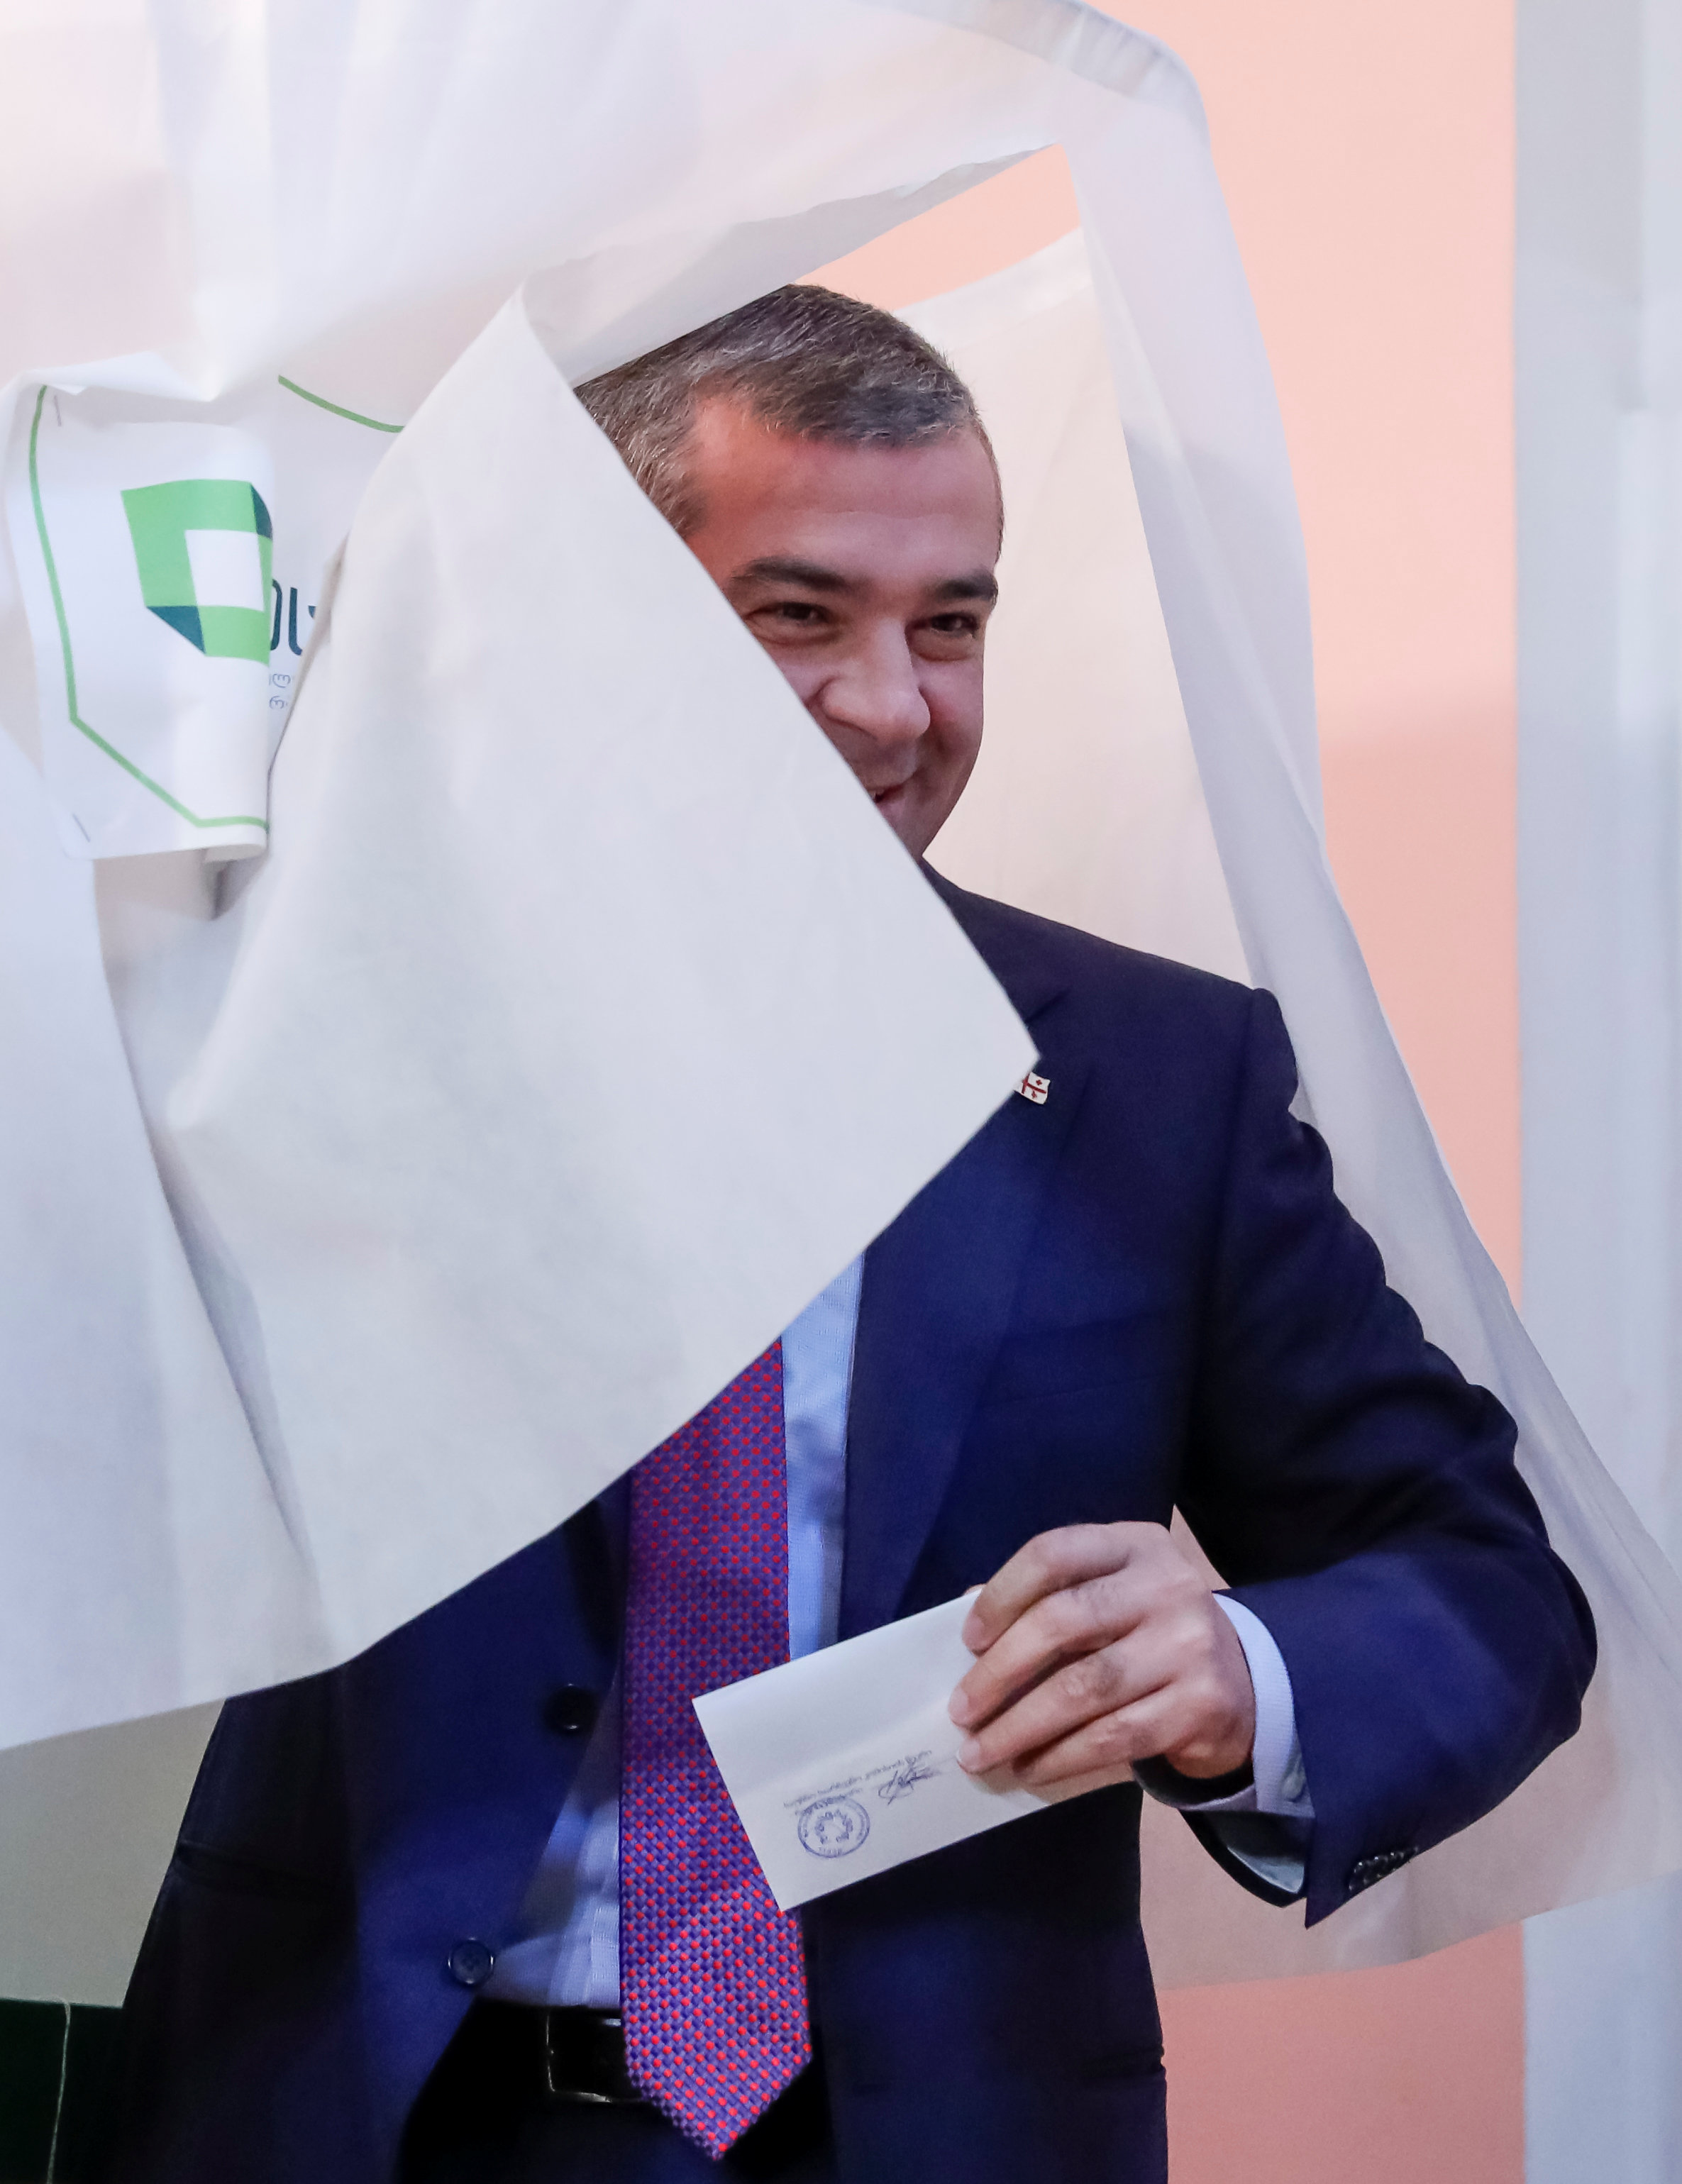 مرشح الرئاسة الجورجية جريجول فاشادزه أثناء إدلاءه بصوته